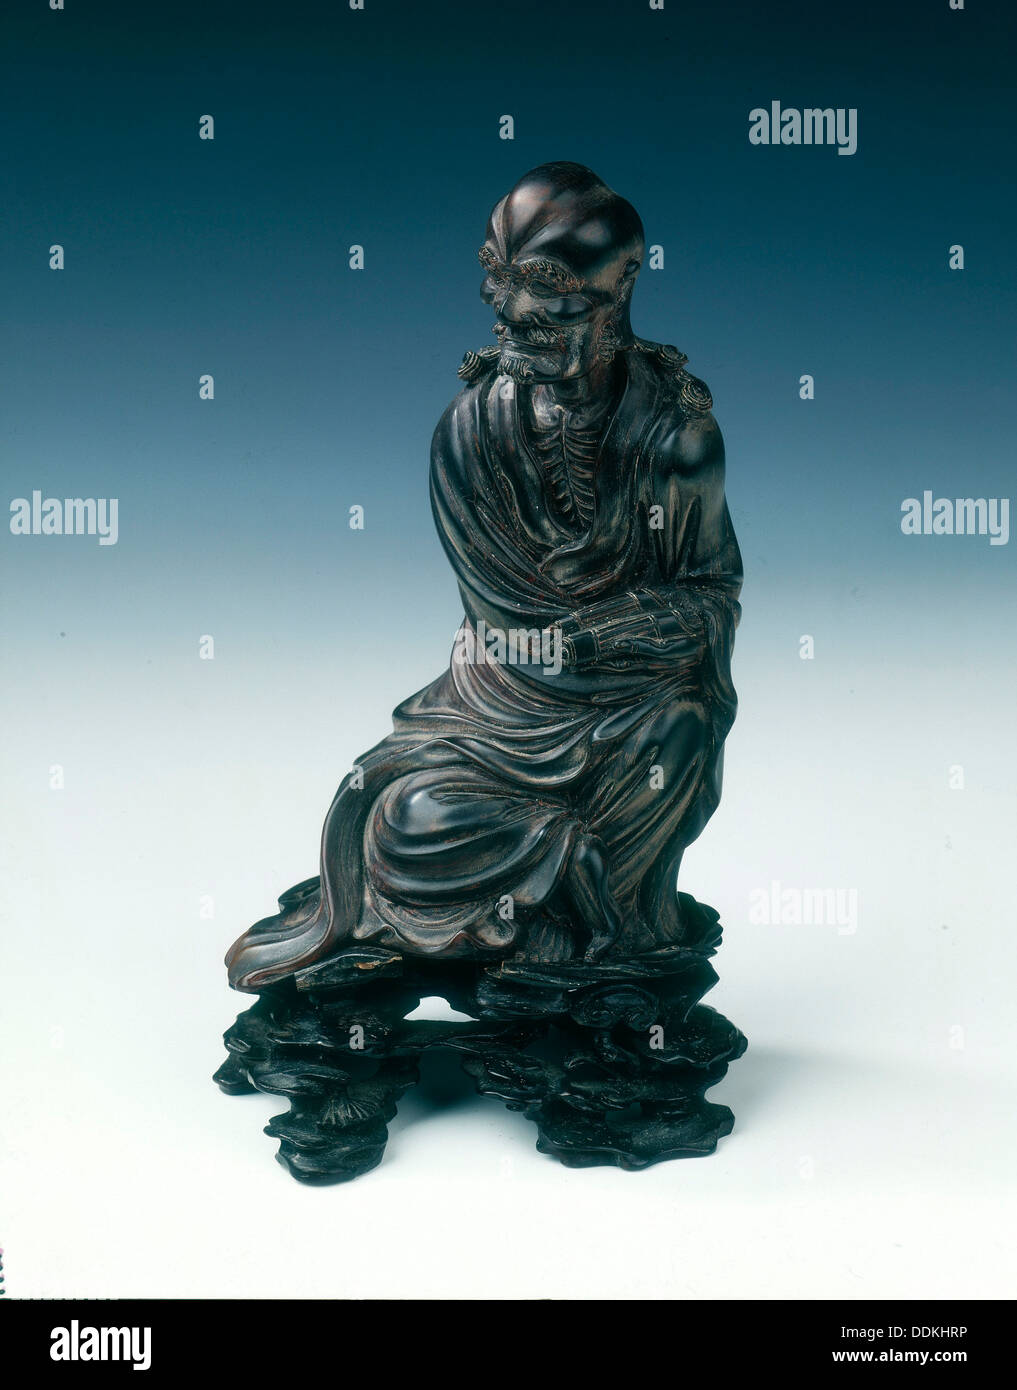 Horn luohan figure, Ming de la dynastie Qing, Chine, 17e siècle. Artiste : Inconnu Banque D'Images